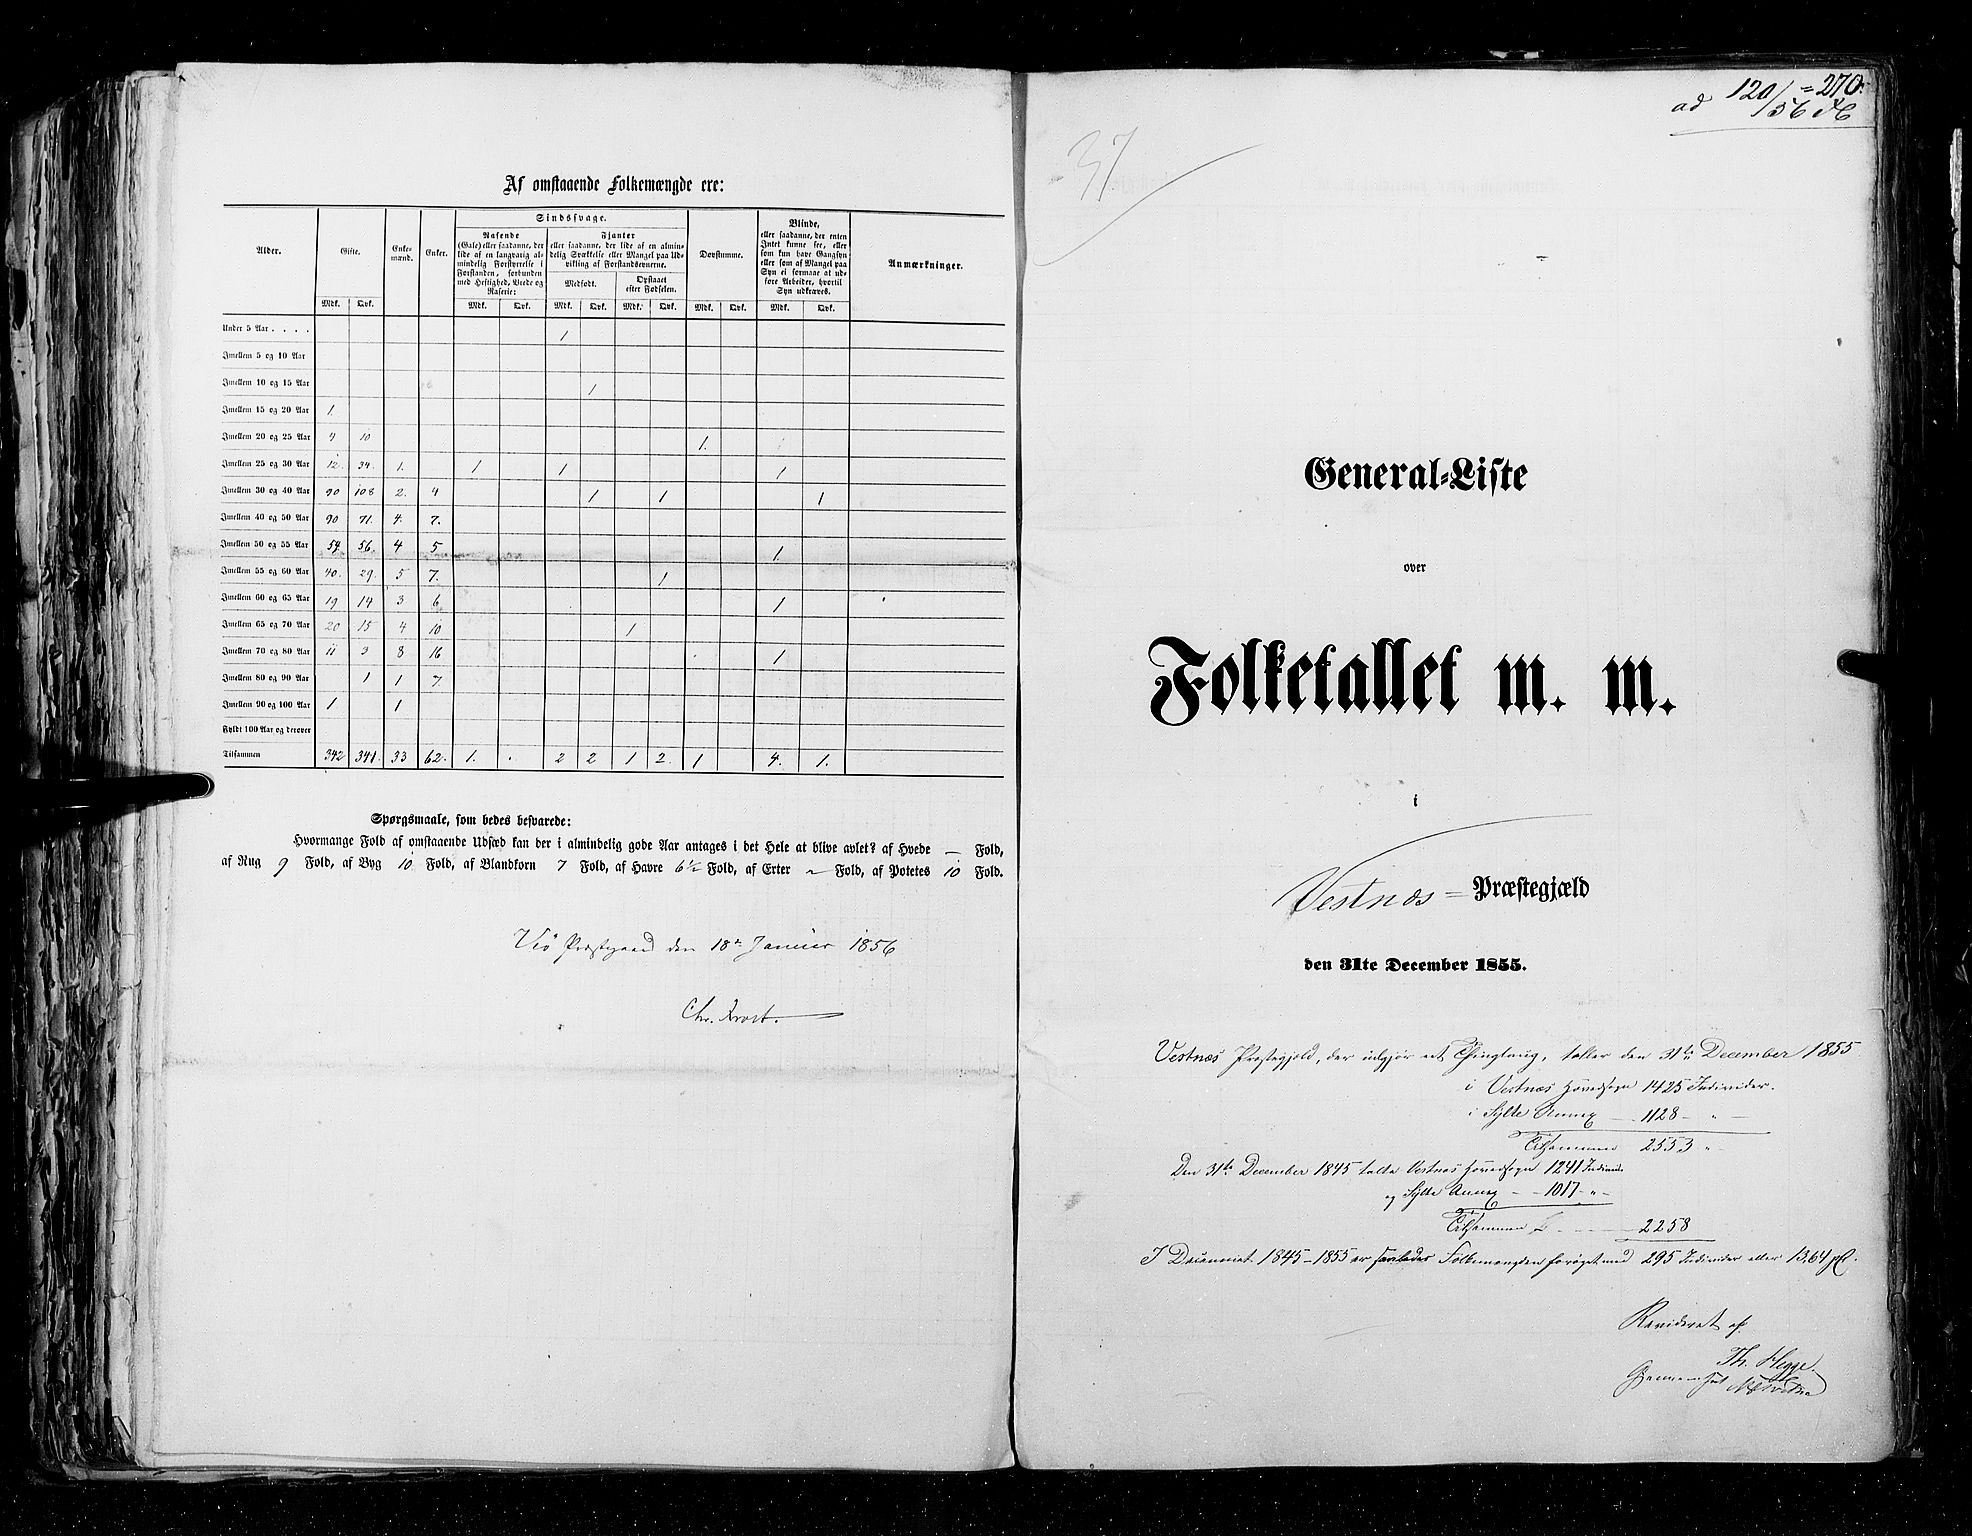 RA, Census 1855, vol. 5: Nordre Bergenhus amt, Romsdal amt og Søndre Trondhjem amt, 1855, p. 270